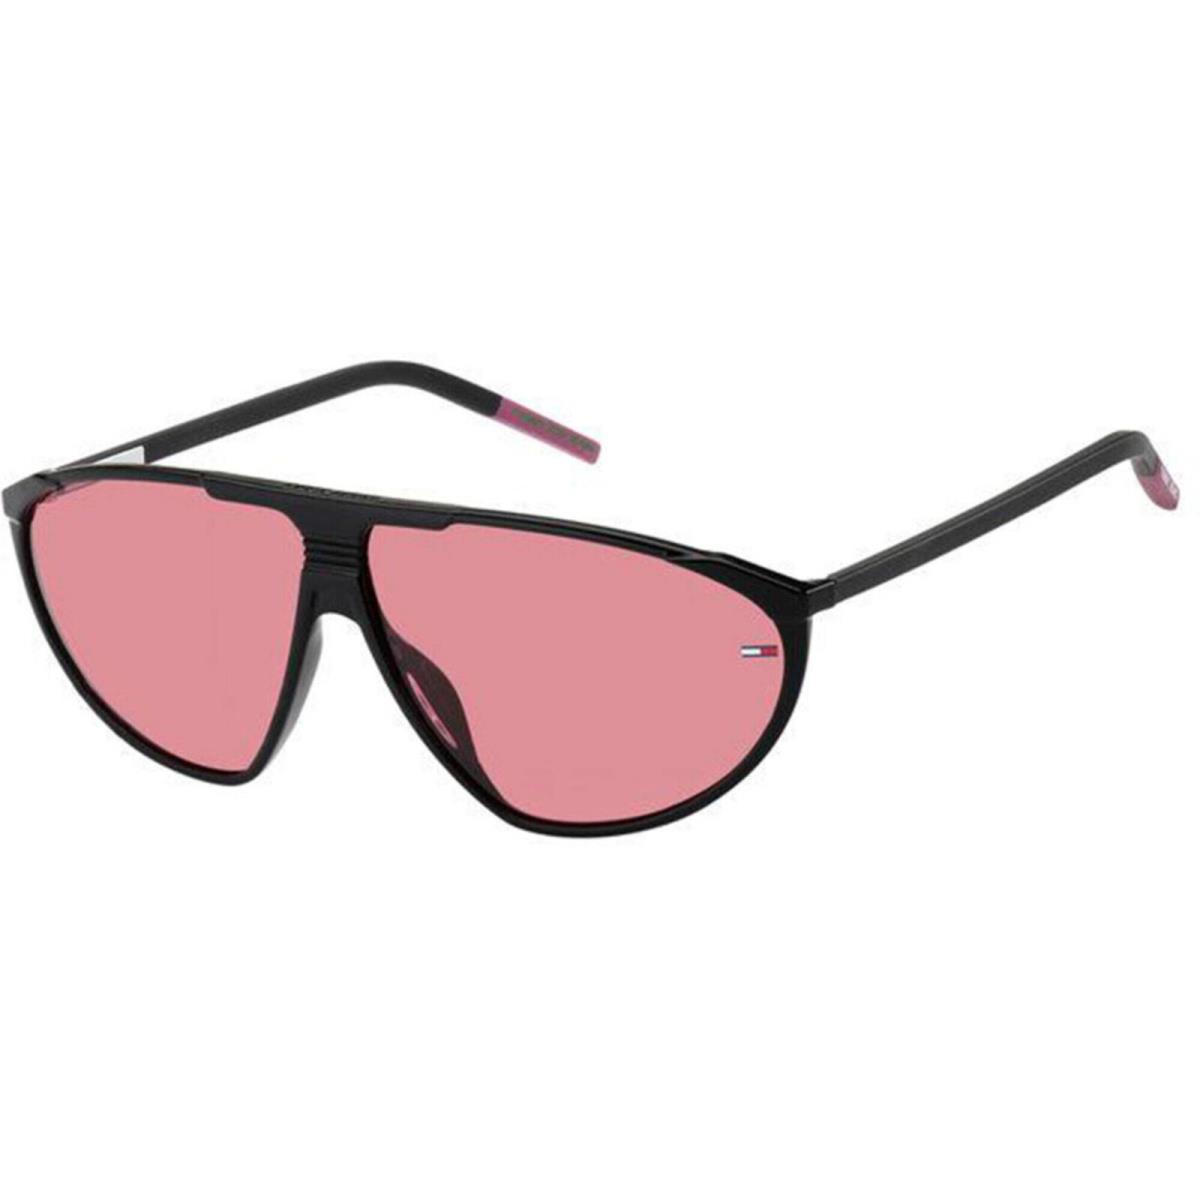 Tommy Hilfiger Unisex Sunglasses Black Plastic Frame Pink Lens TJ 0027/S 807